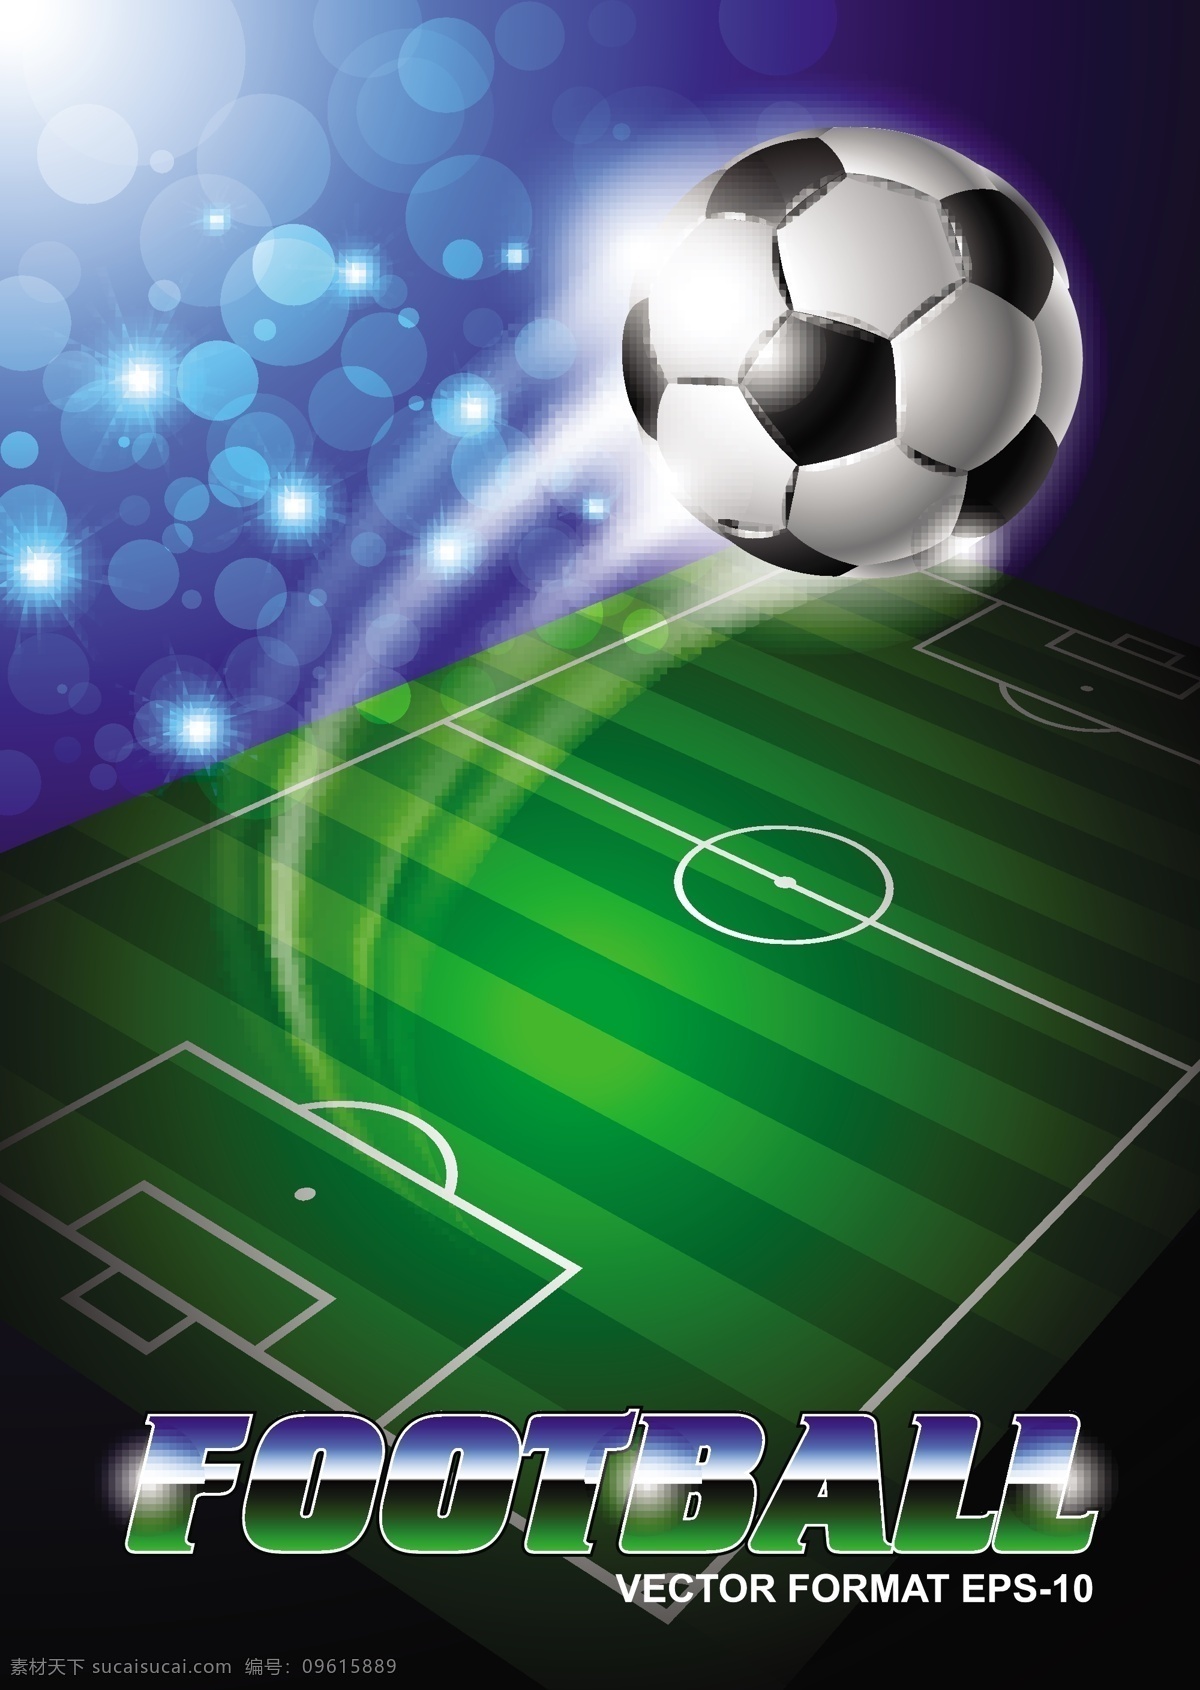 球场 足球 背景 模板下载 世界杯 巴西 体育运动 生活百科 矢量素材 黑色